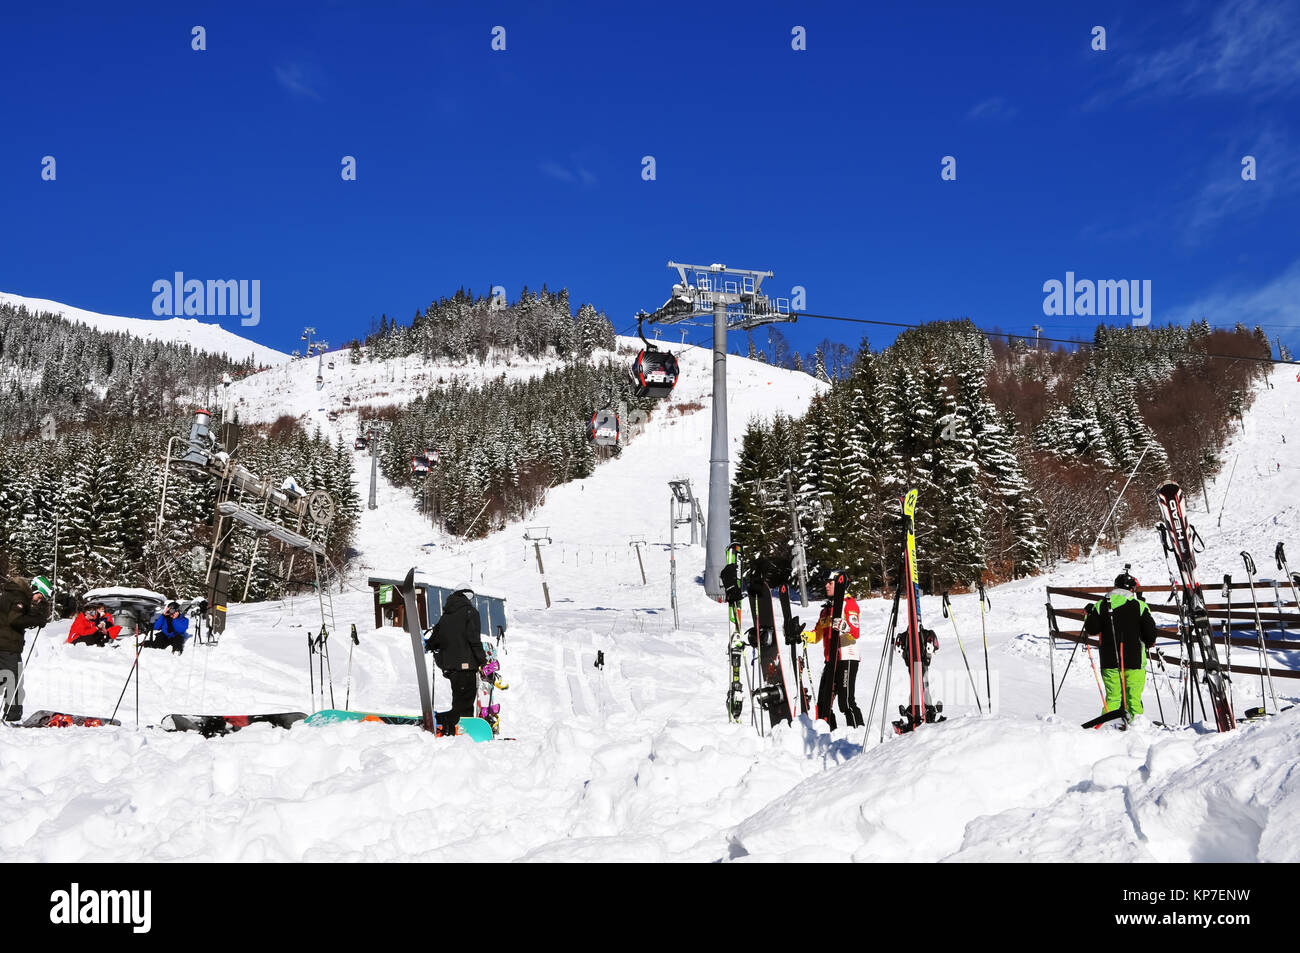 Jasna, Slowakei - Dezember 1, 2017: Skifahrer, Seilbahn und Schnee Hänge auf der Südseite des Berges Chopok an einem sonnigen Tag im Skigebiet Jasna, niedrige Ta Stockfoto